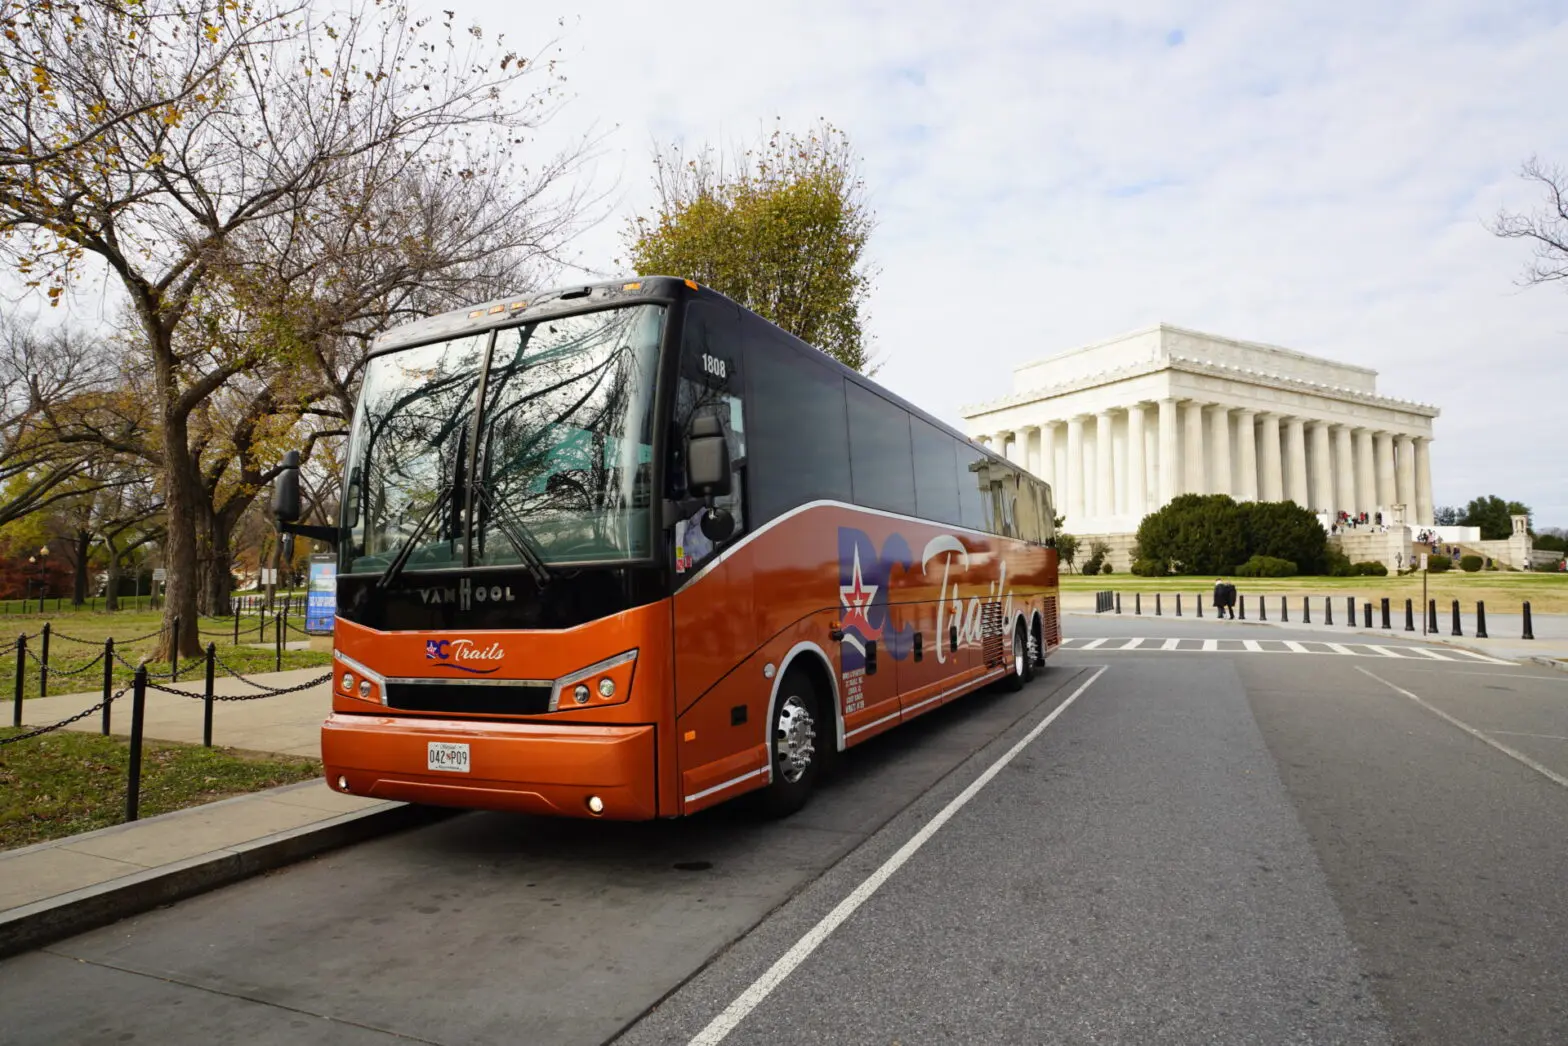 DC Trails - About Us, DC Bus Tours Service Provider